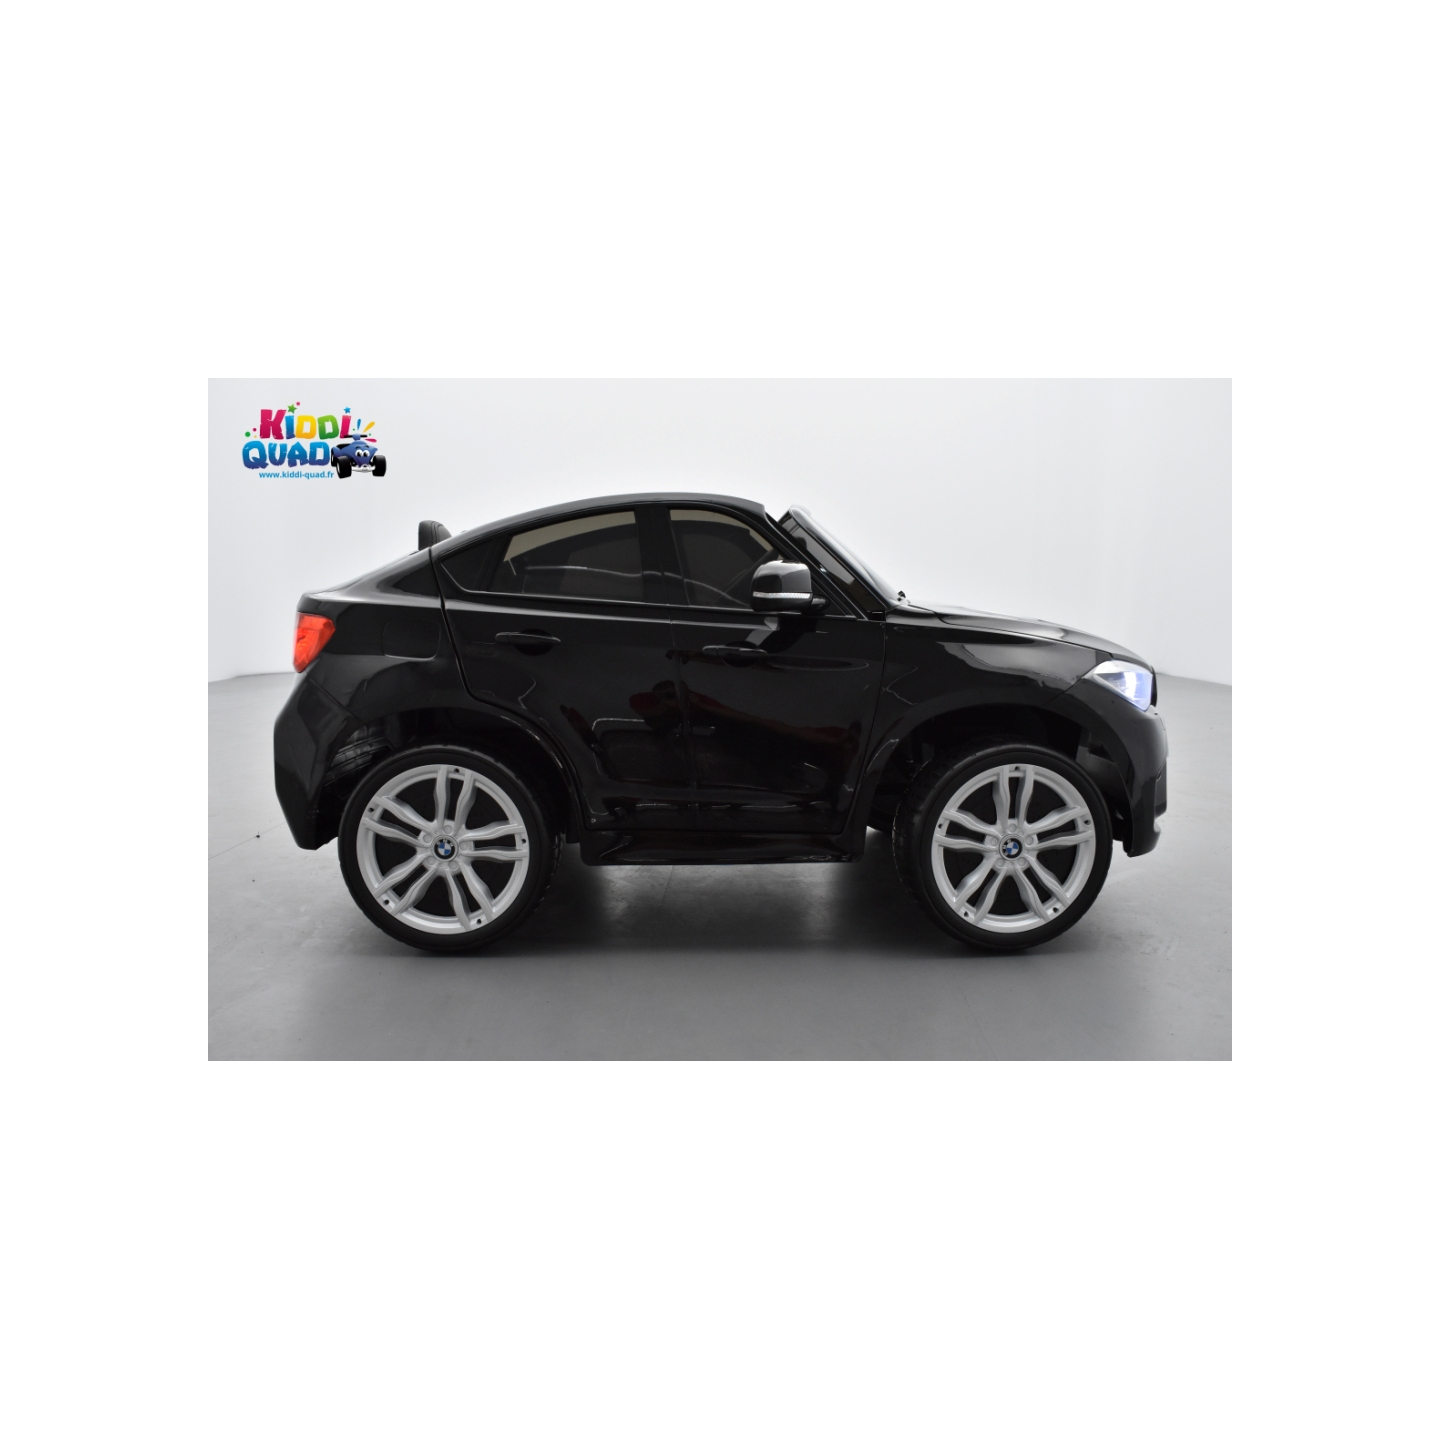 BMW X6 M Noir Métallisée 2 places, voiture électrique enfant , 12 volts - 10AH, 2 moteurs